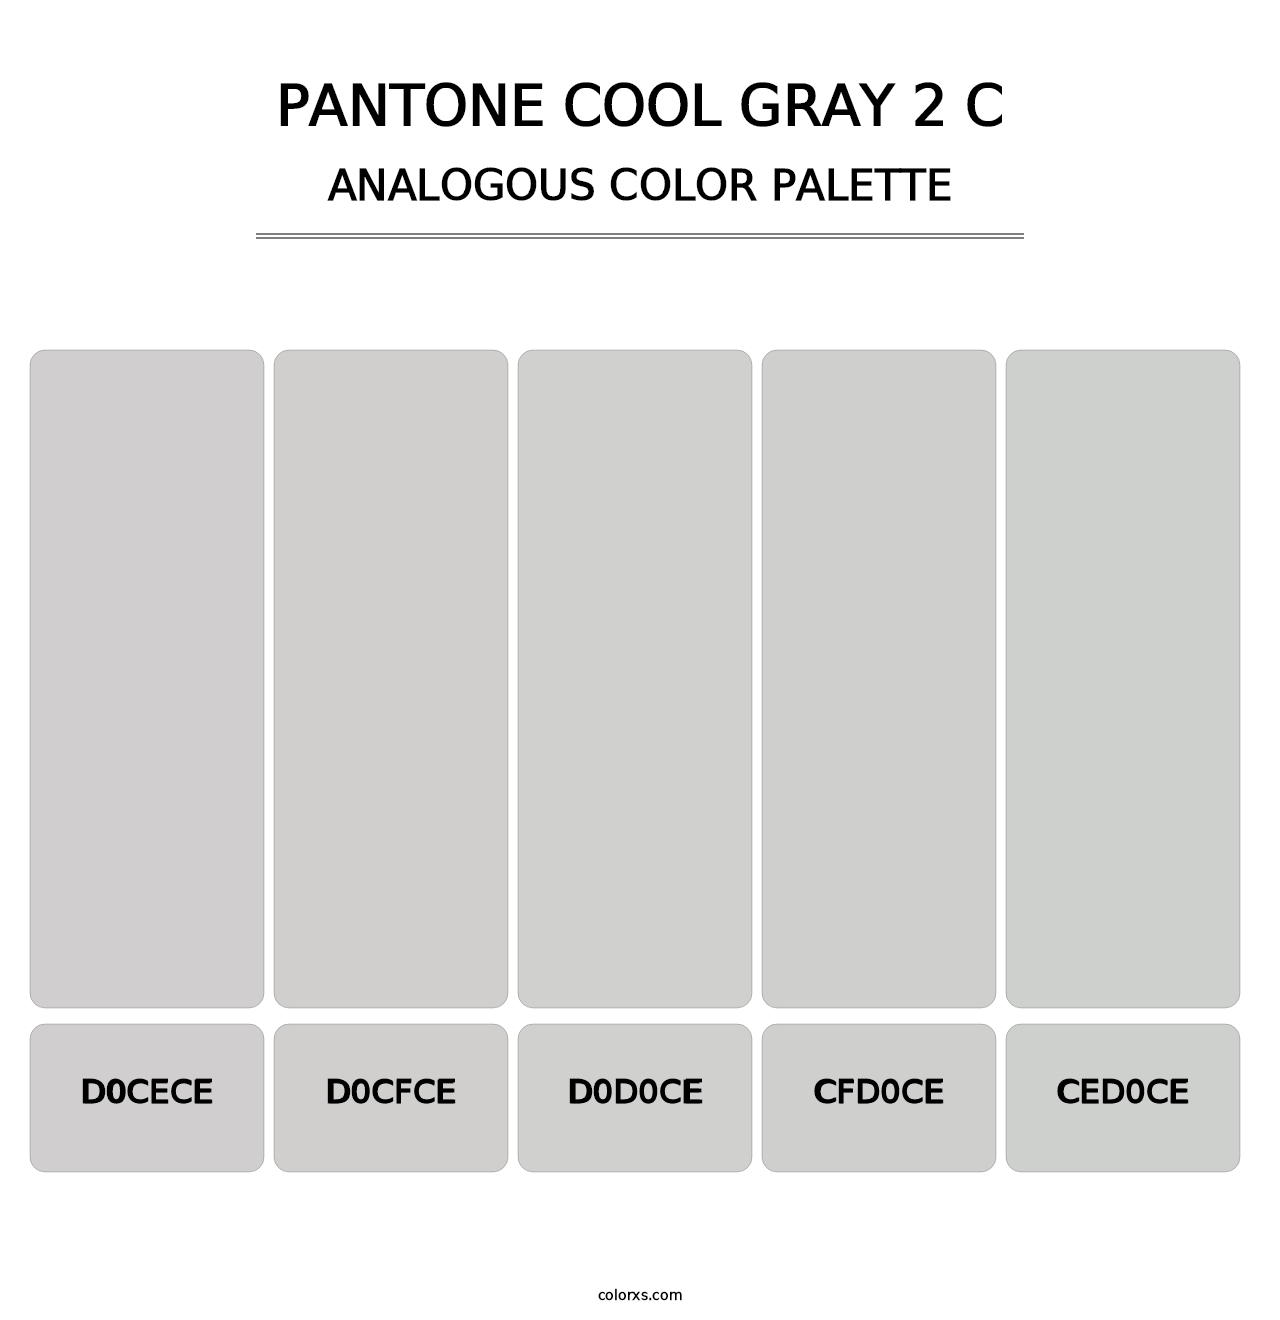 PANTONE Cool Gray 2 C - Analogous Color Palette